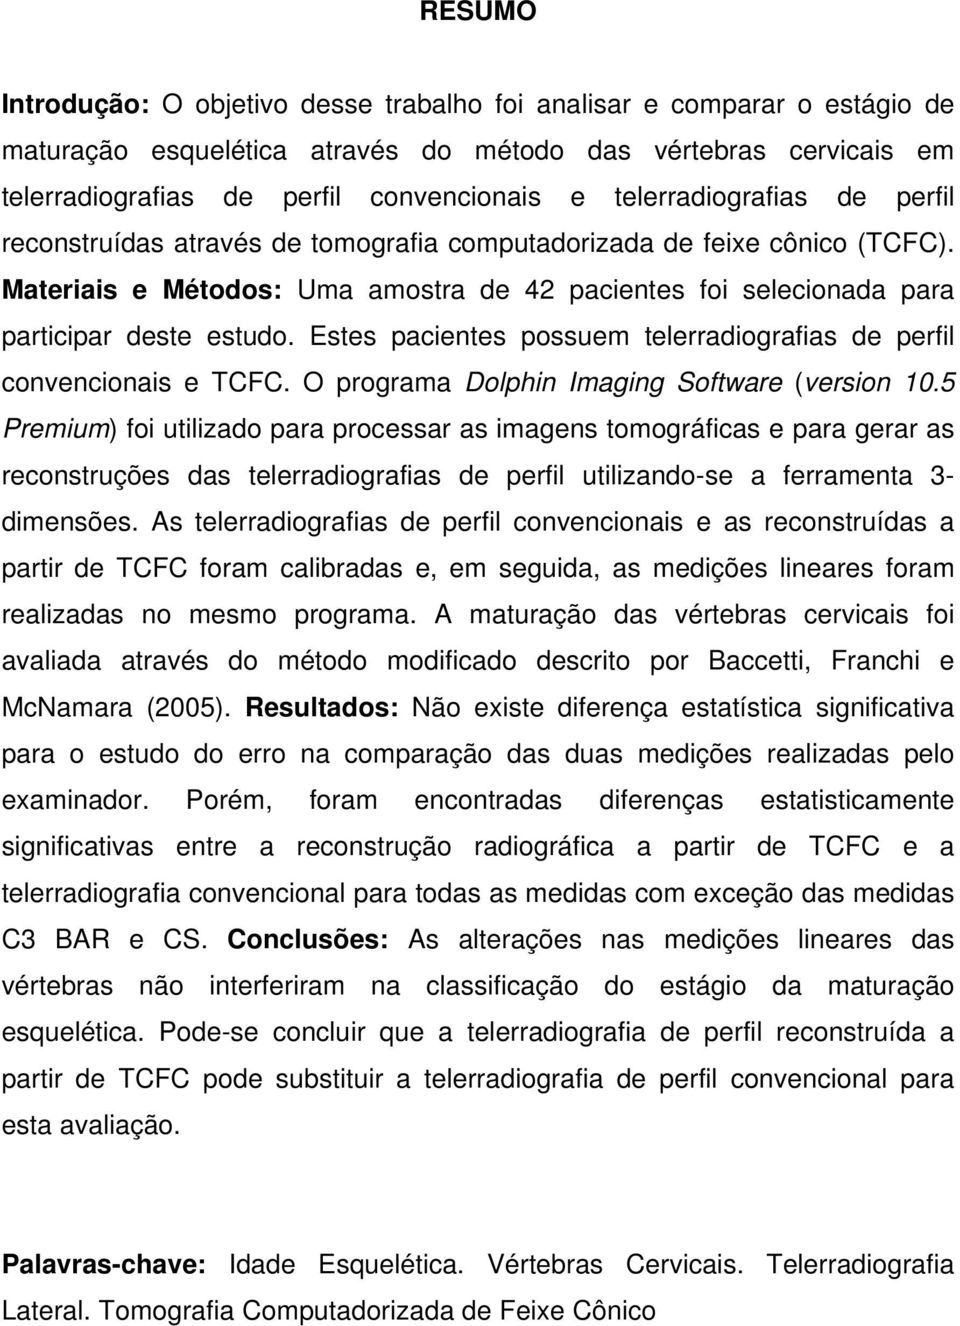 Estes pacientes possuem telerradiografias de perfil convencionais e TCFC. O programa Dolphin Imaging Software (version 10.